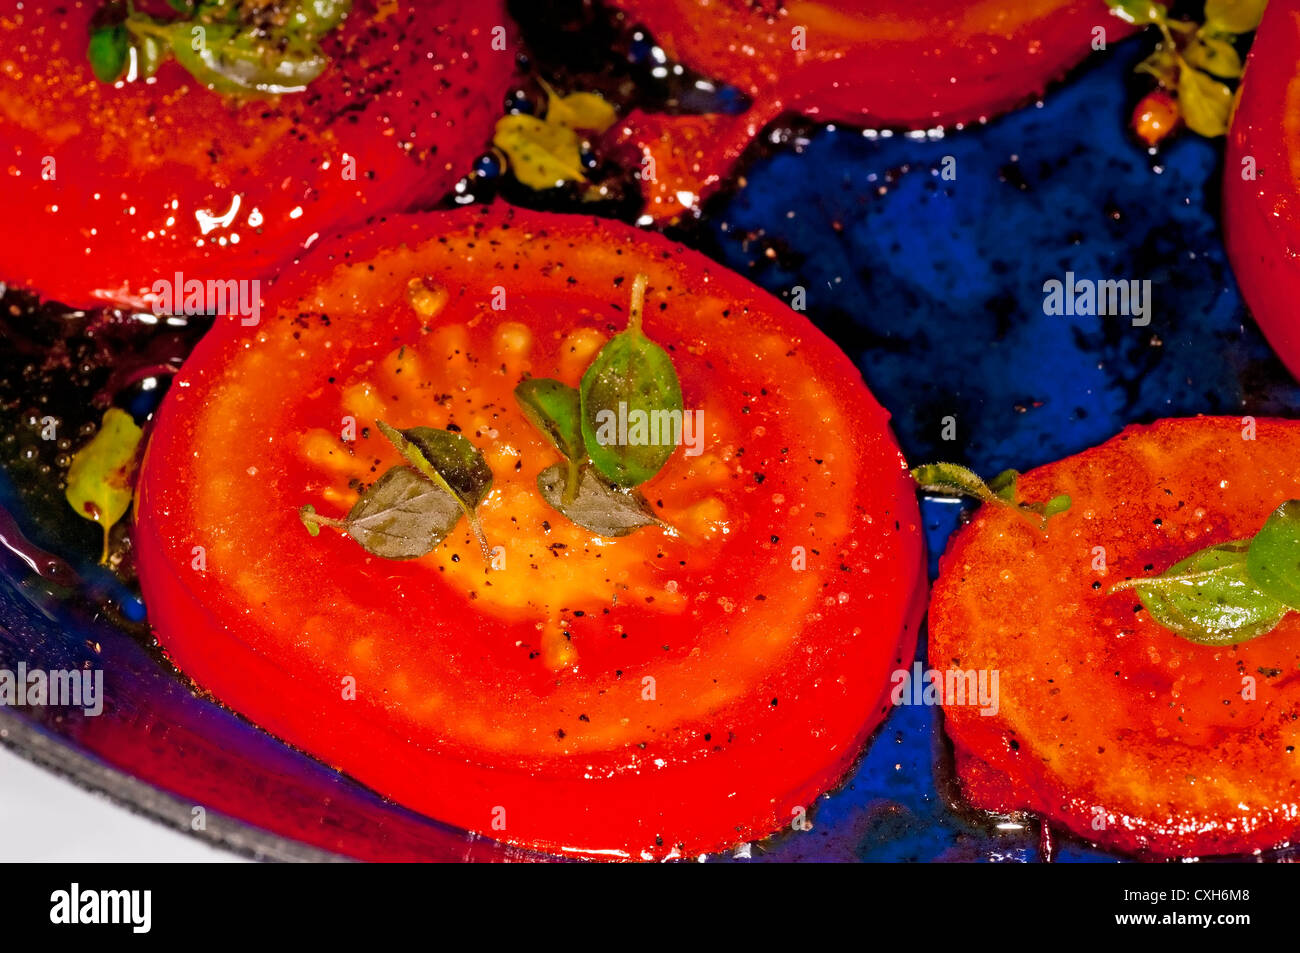 roasted tomato Stock Photo